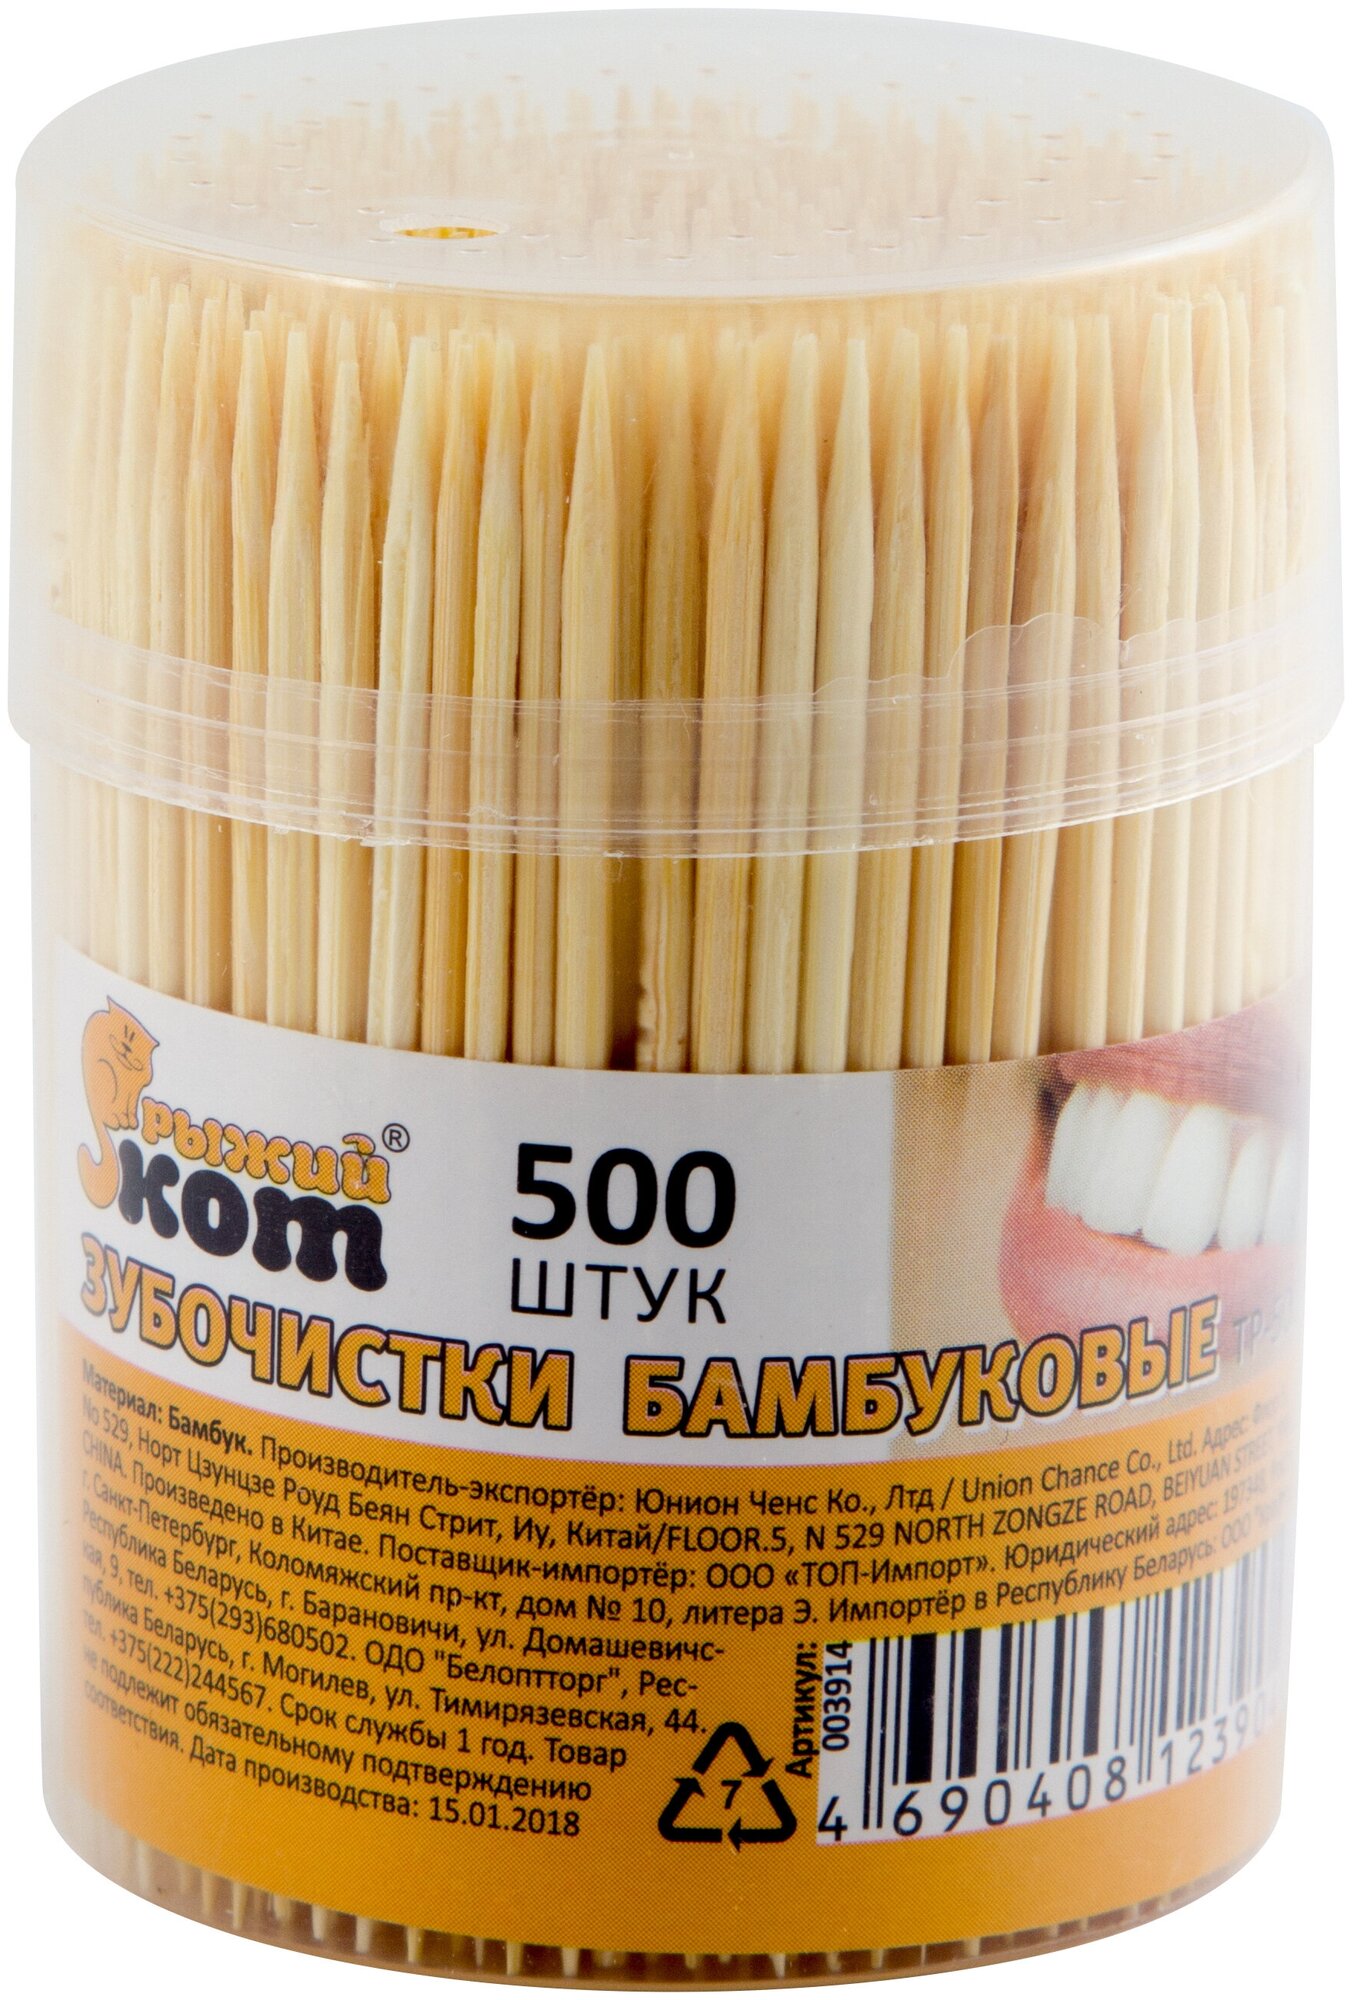 Зубочистки бамбуковые 500ШТ СПБ